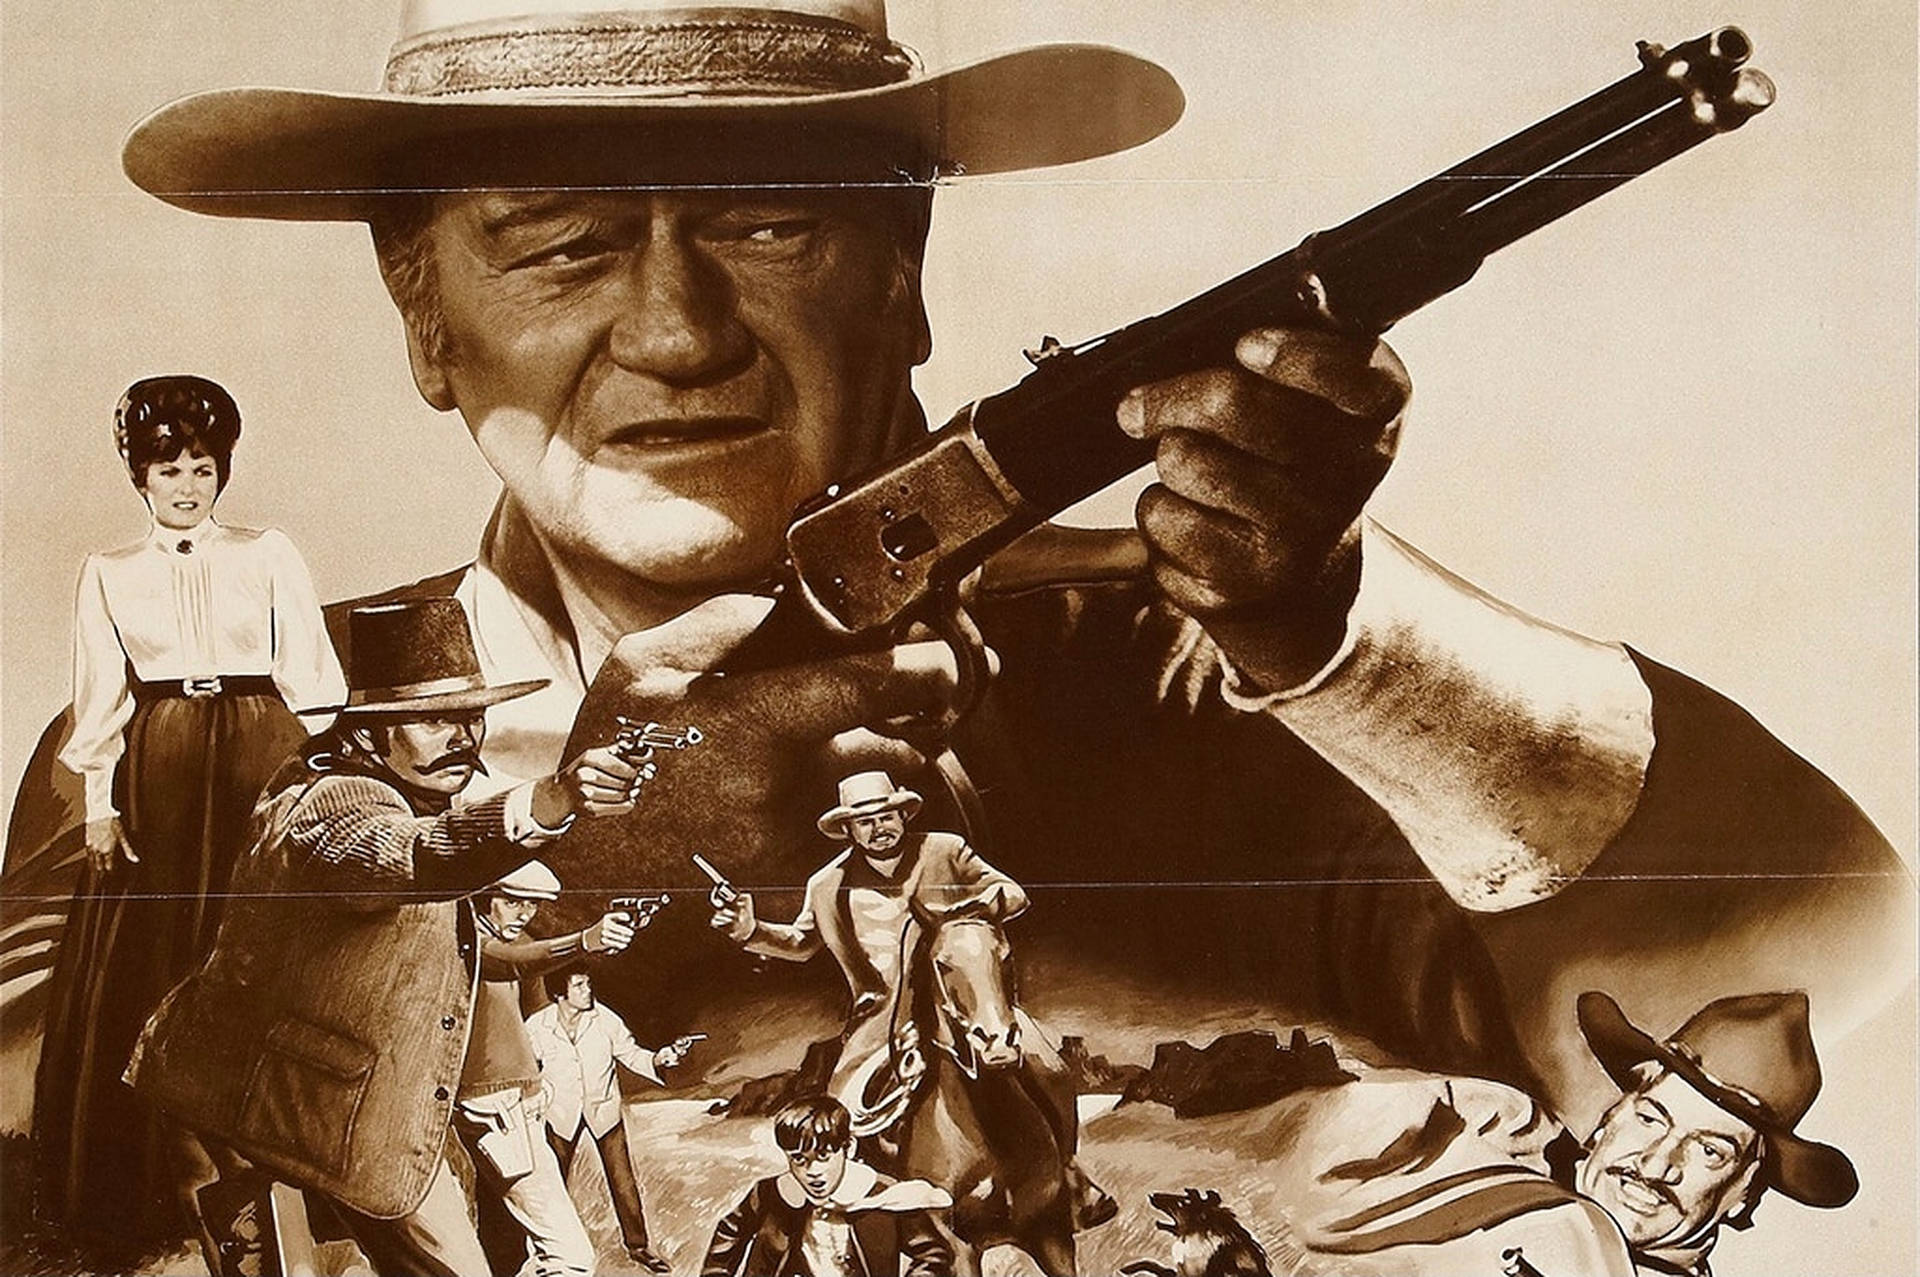 John Wayne With Gun Background